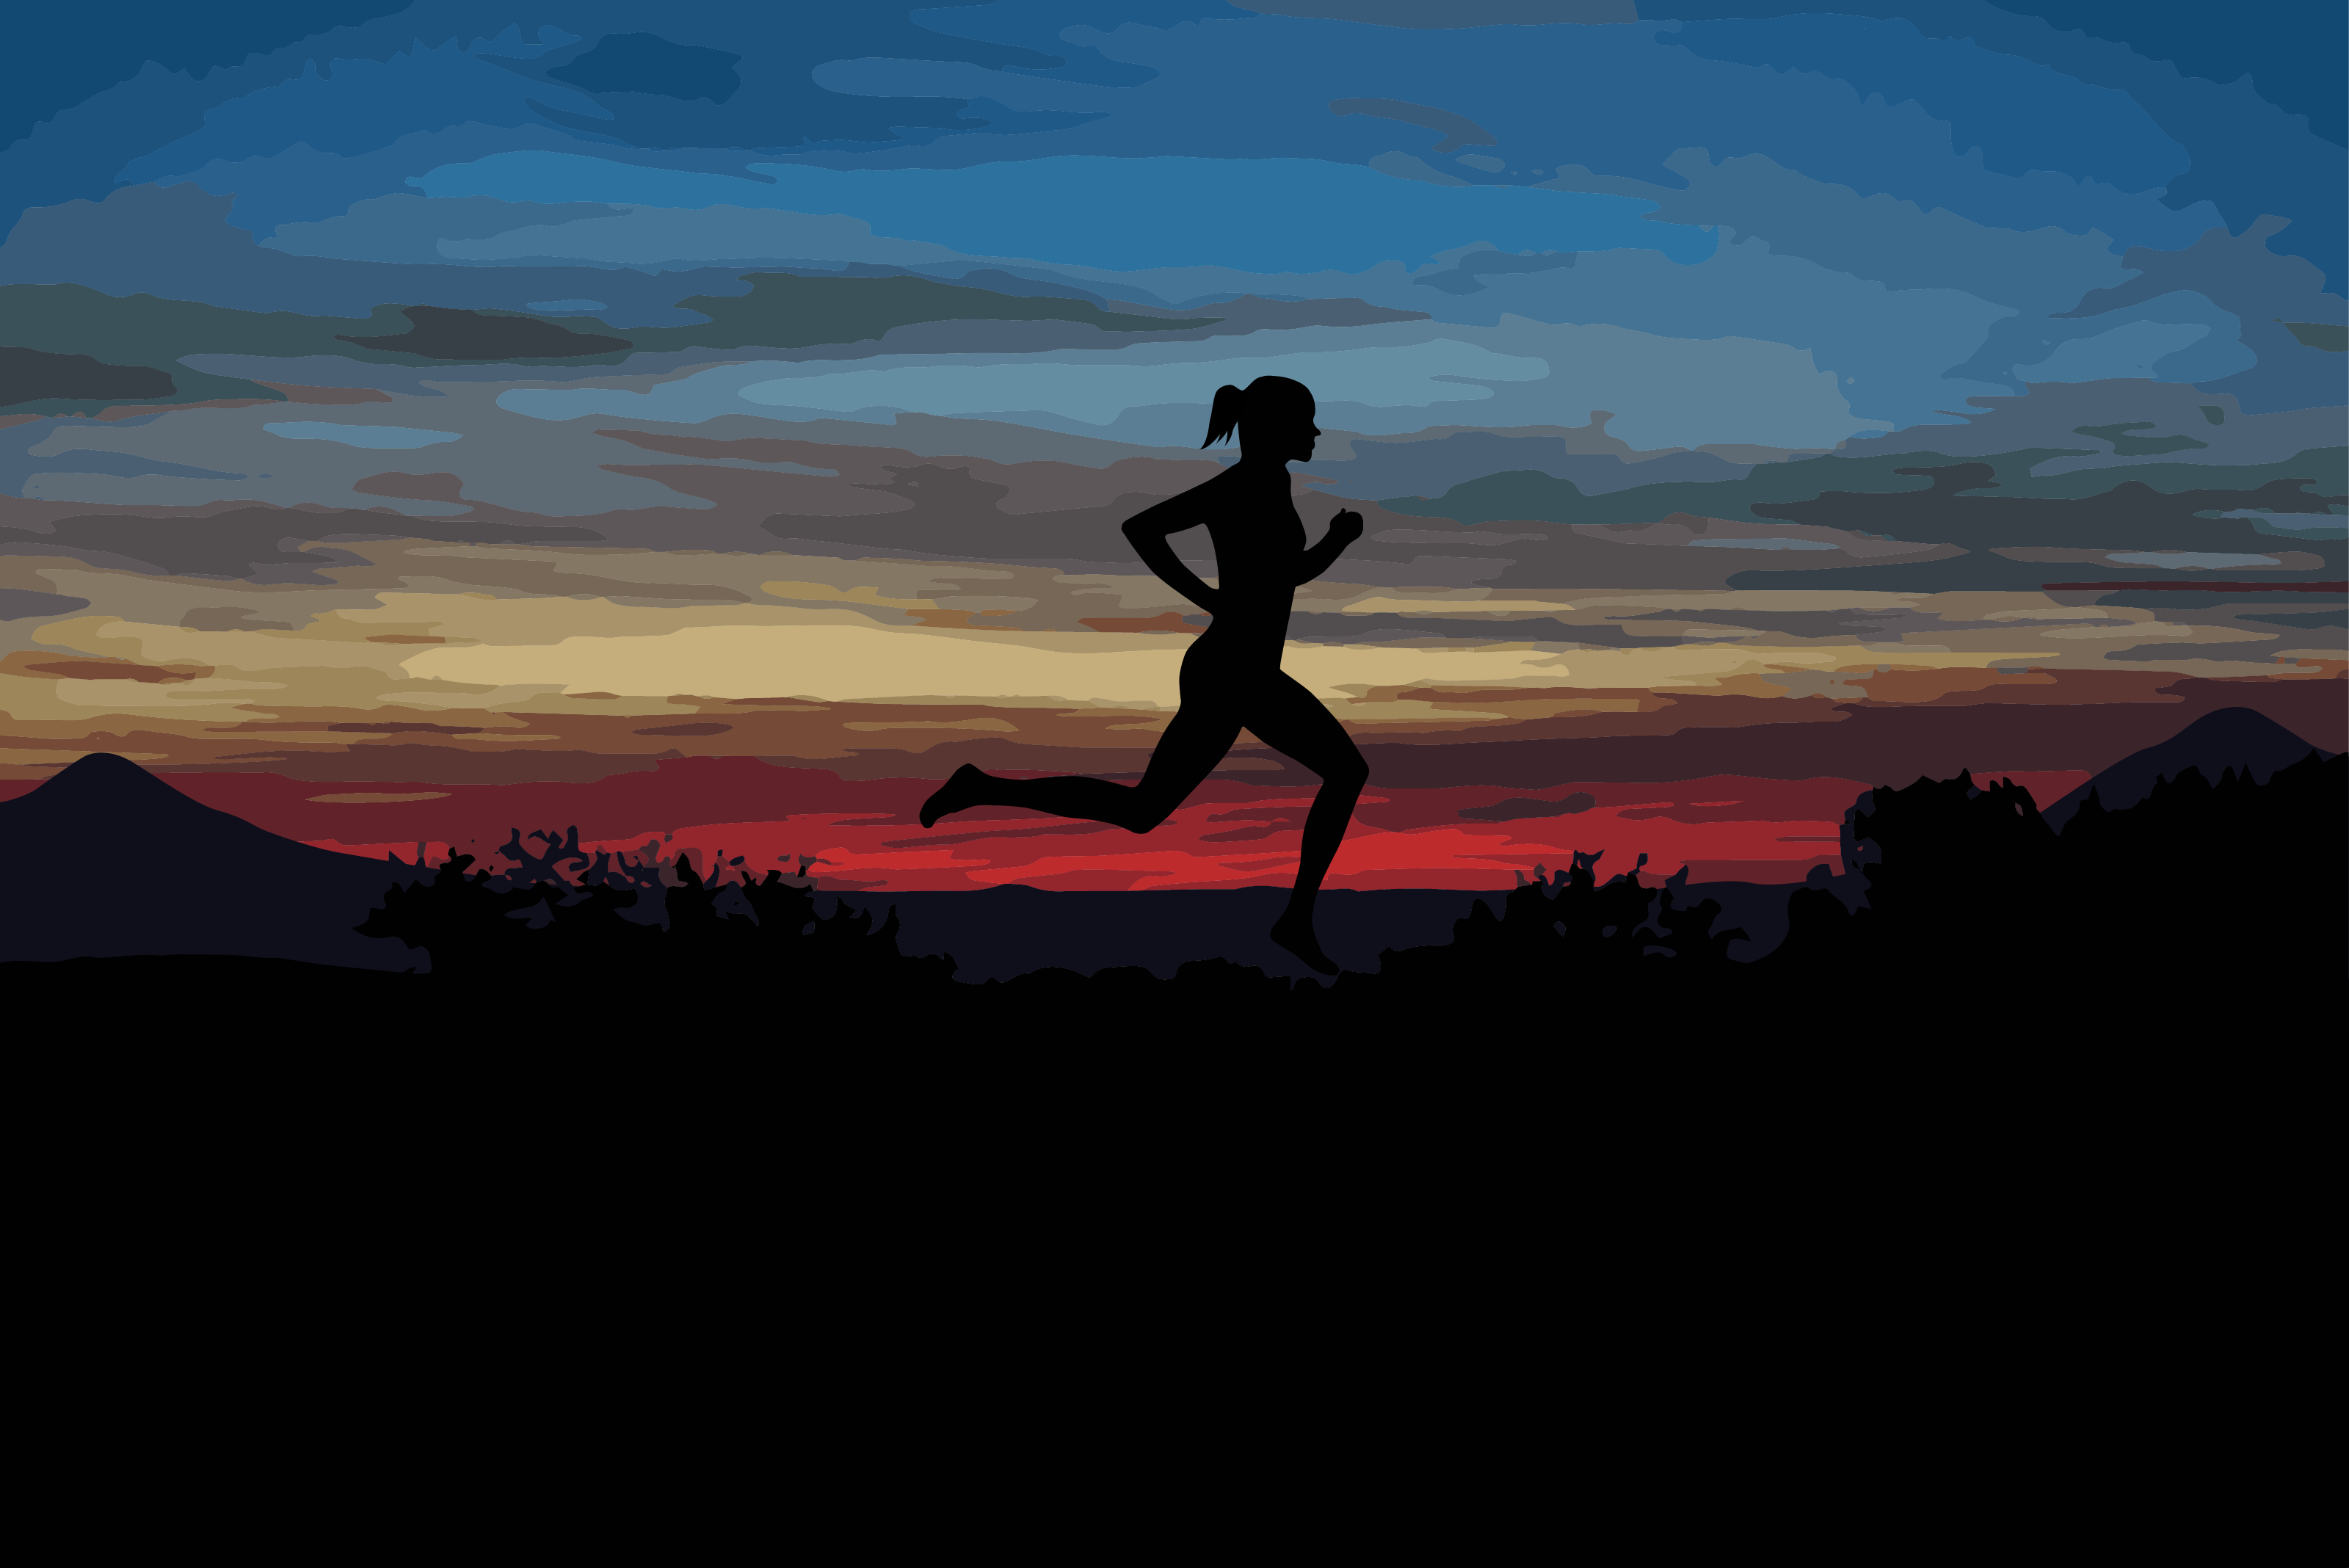 Female runner at sunset illustration by Xavier Wendling.